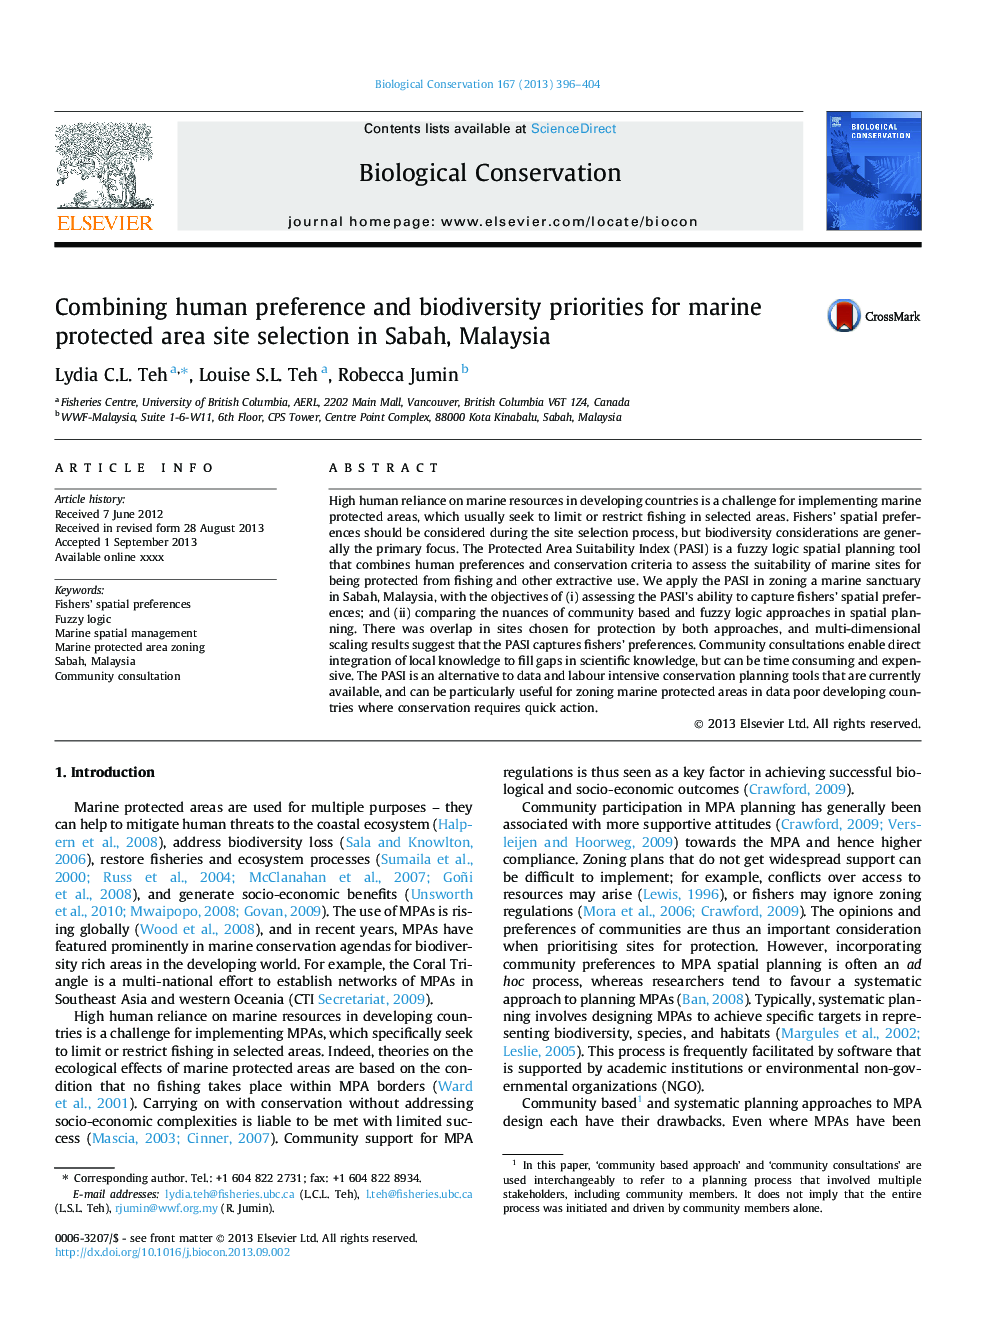 ترکیب اولویت های انسانی و اولویت های تنوع زیستی برای انتخاب سایت های حفاظت شده دریایی در صباح، مالزی 